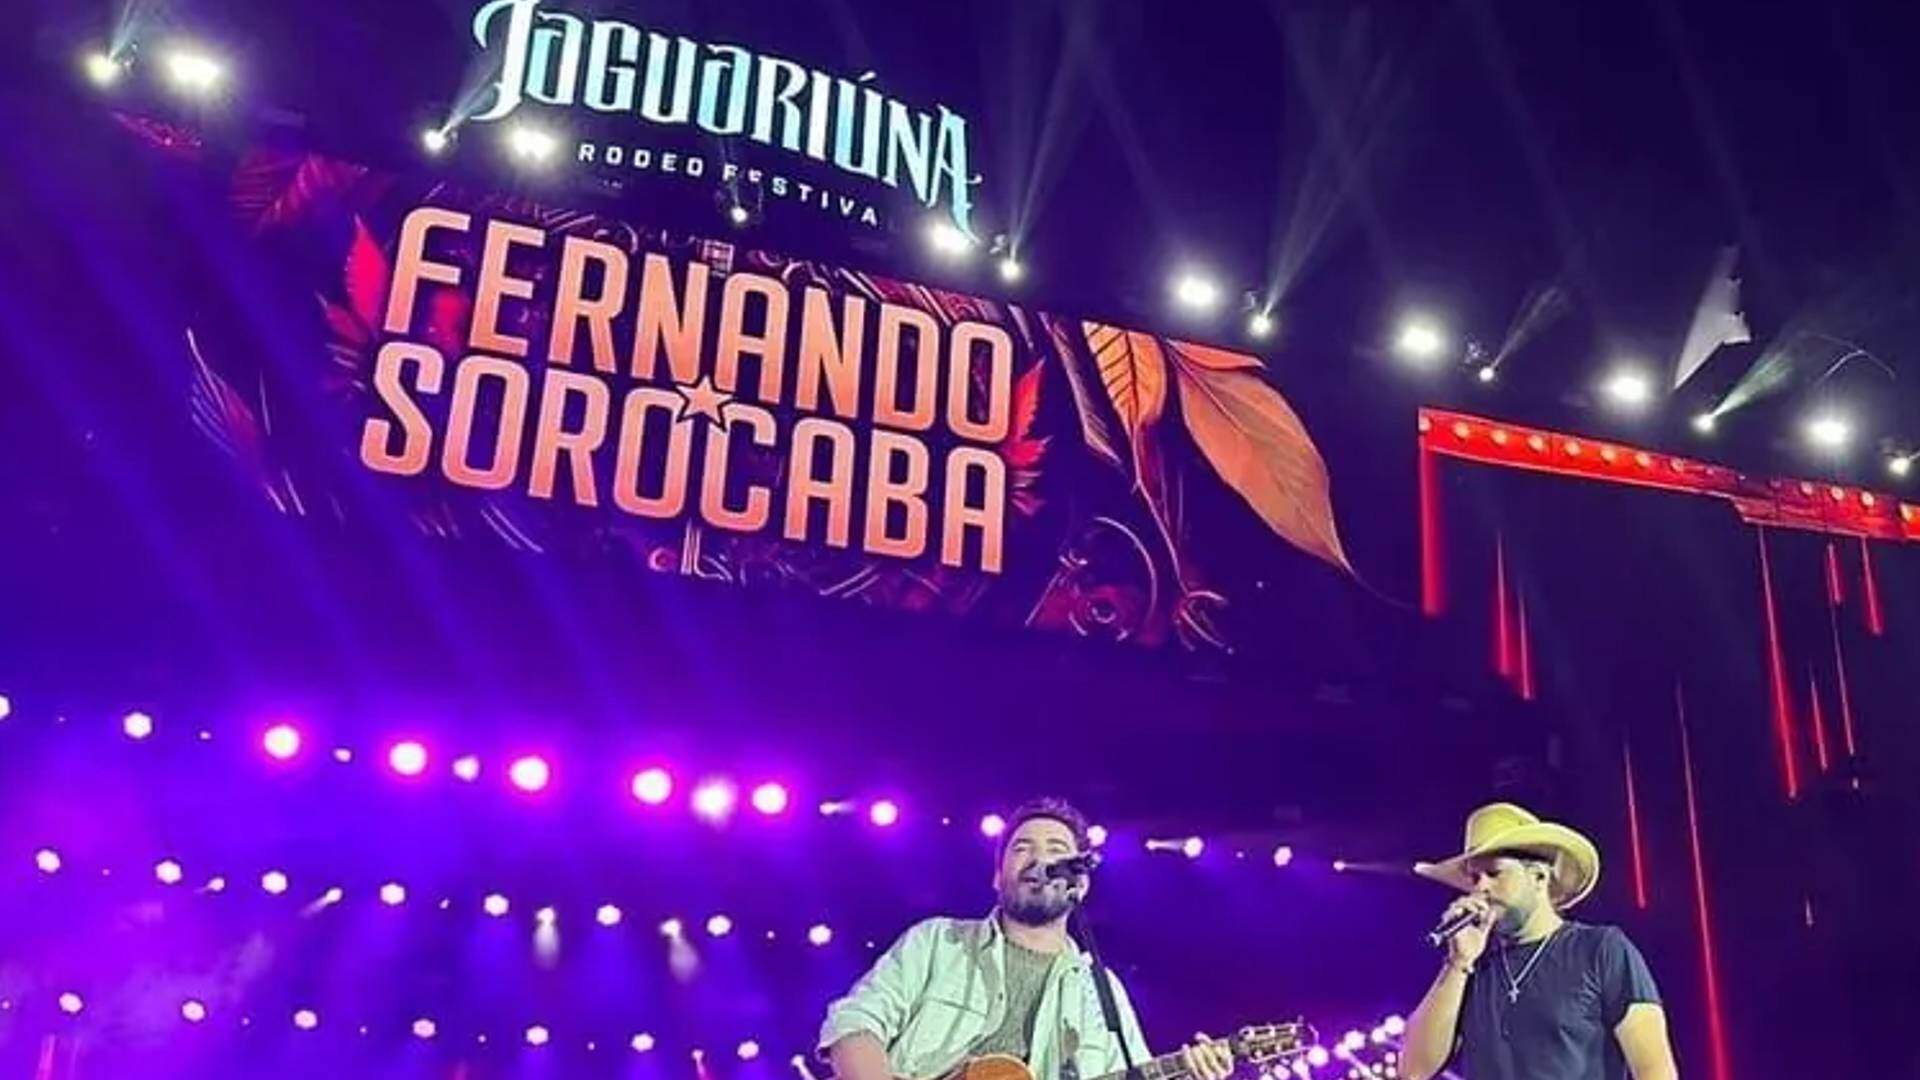 Fernando e Sorocaba passam por grande sufoco em show no Jaguariúna Rodeo Festival e expõem o problema ao público - Metropolitana FM